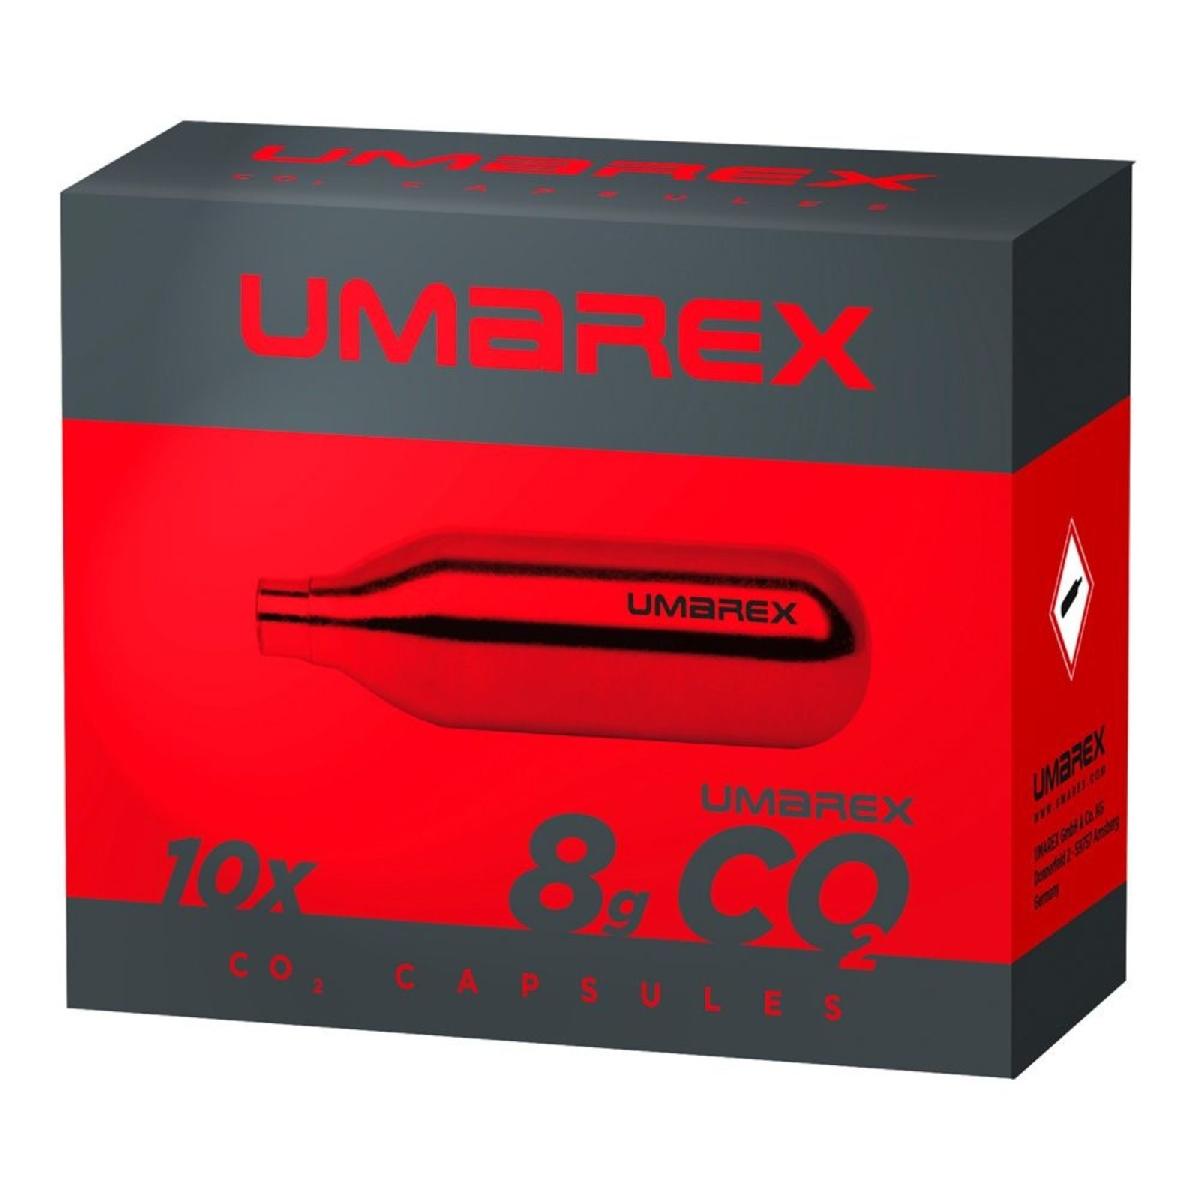 Umarex - Umarex 8 grams Co2 patronen